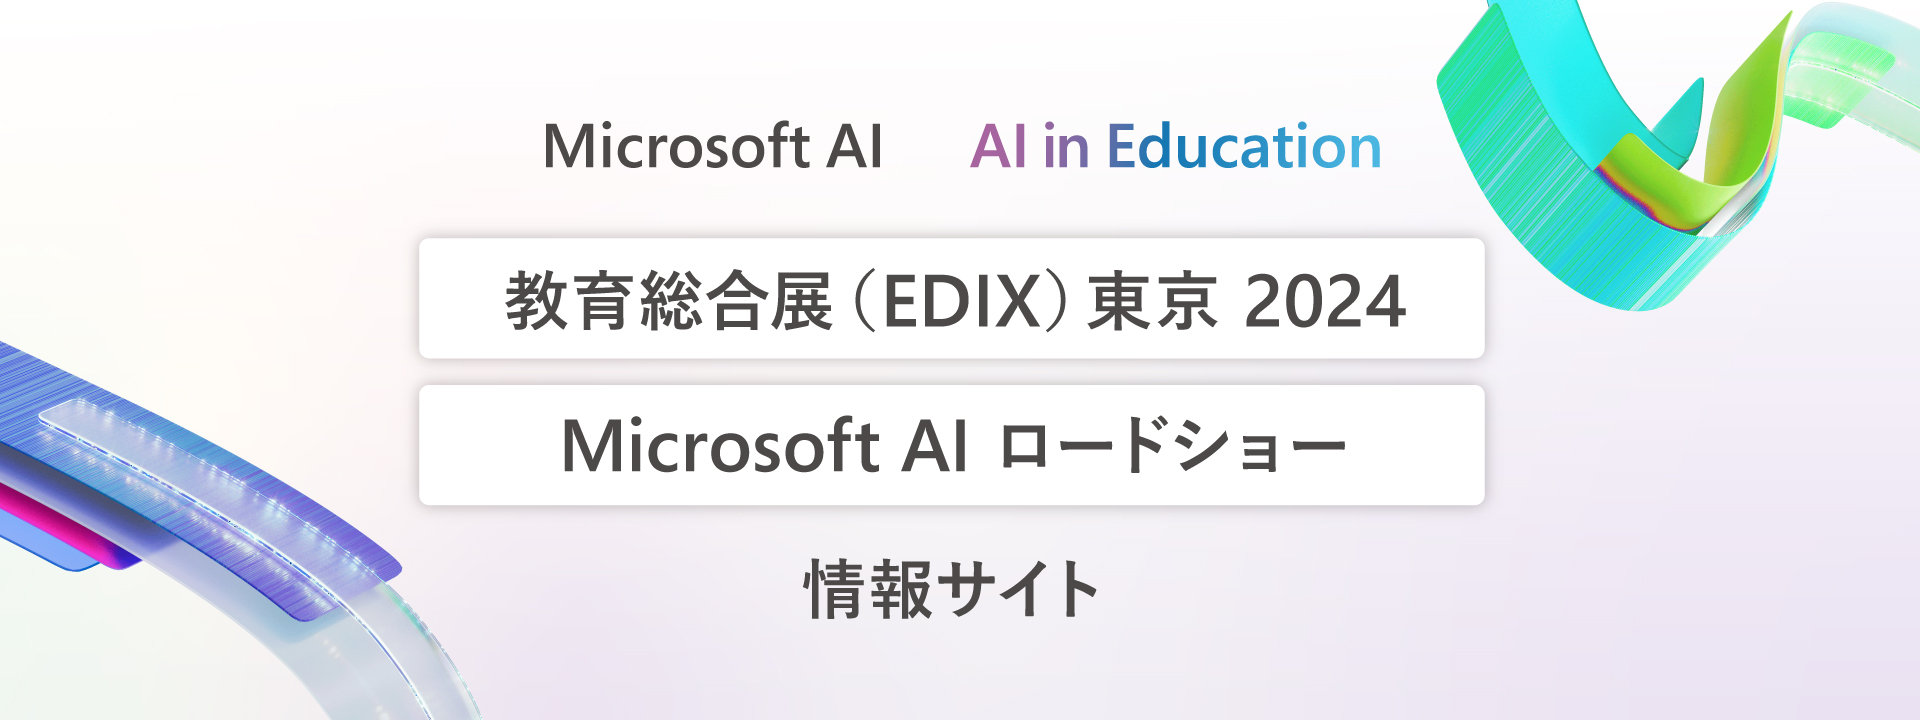 教育総合展(EDIX)東京2024 ラージバナー